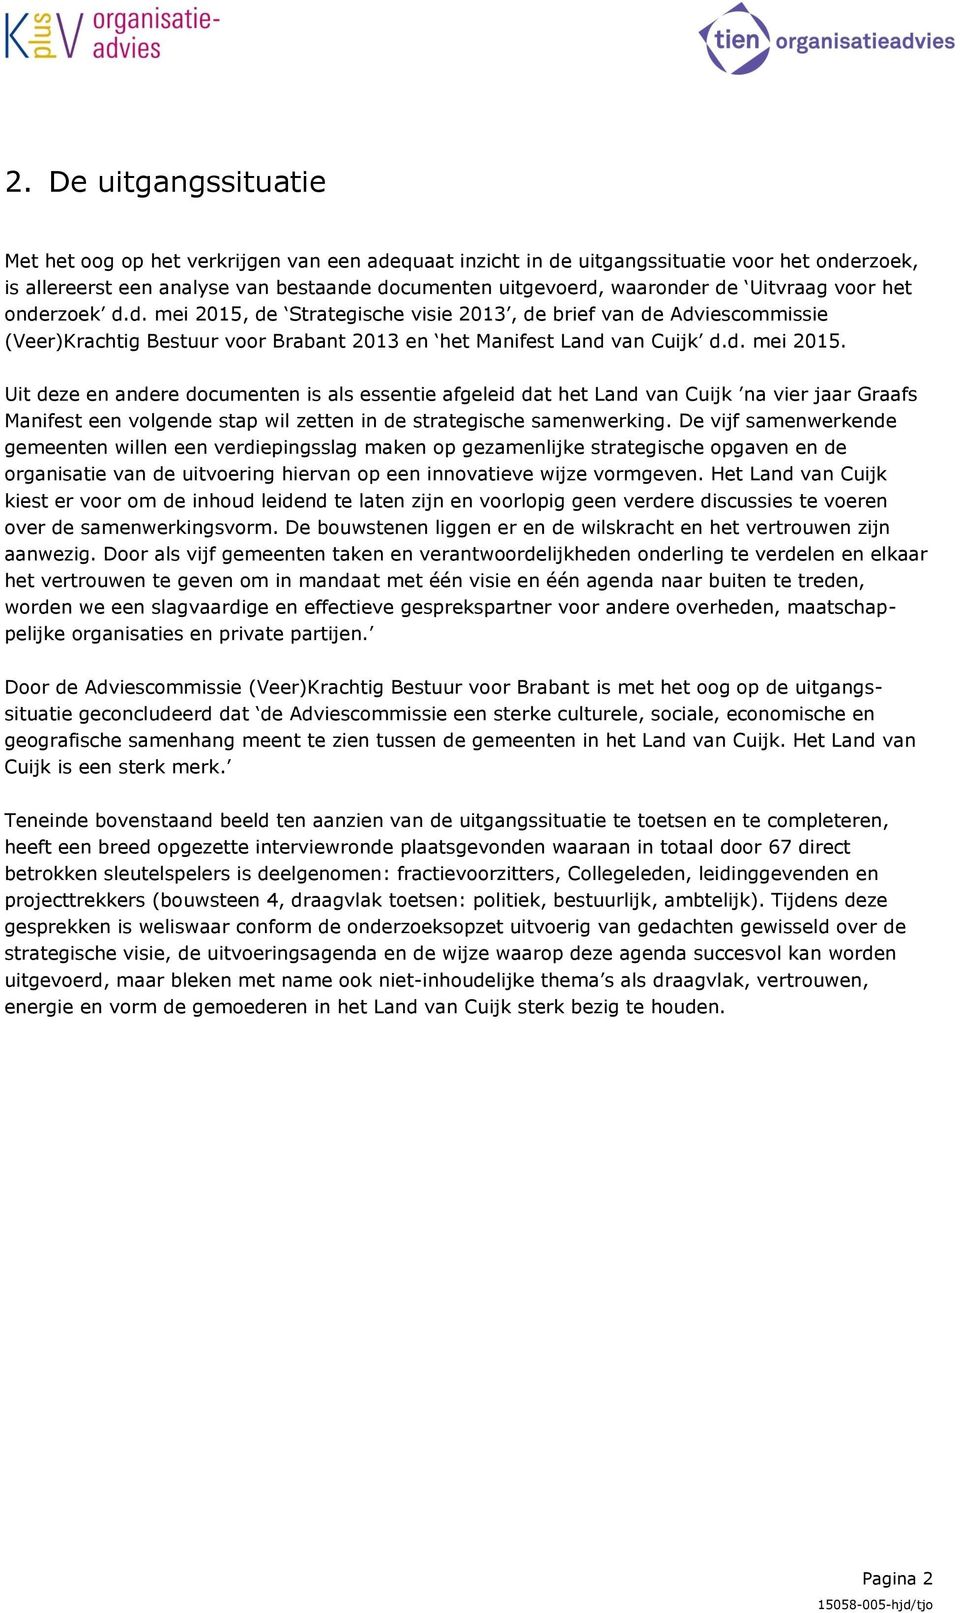 de Strategische visie 2013, de brief van de Adviescommissie (Veer)Krachtig Bestuur voor Brabant 2013 en het Manifest Land van Cuijk d.d. mei 2015.